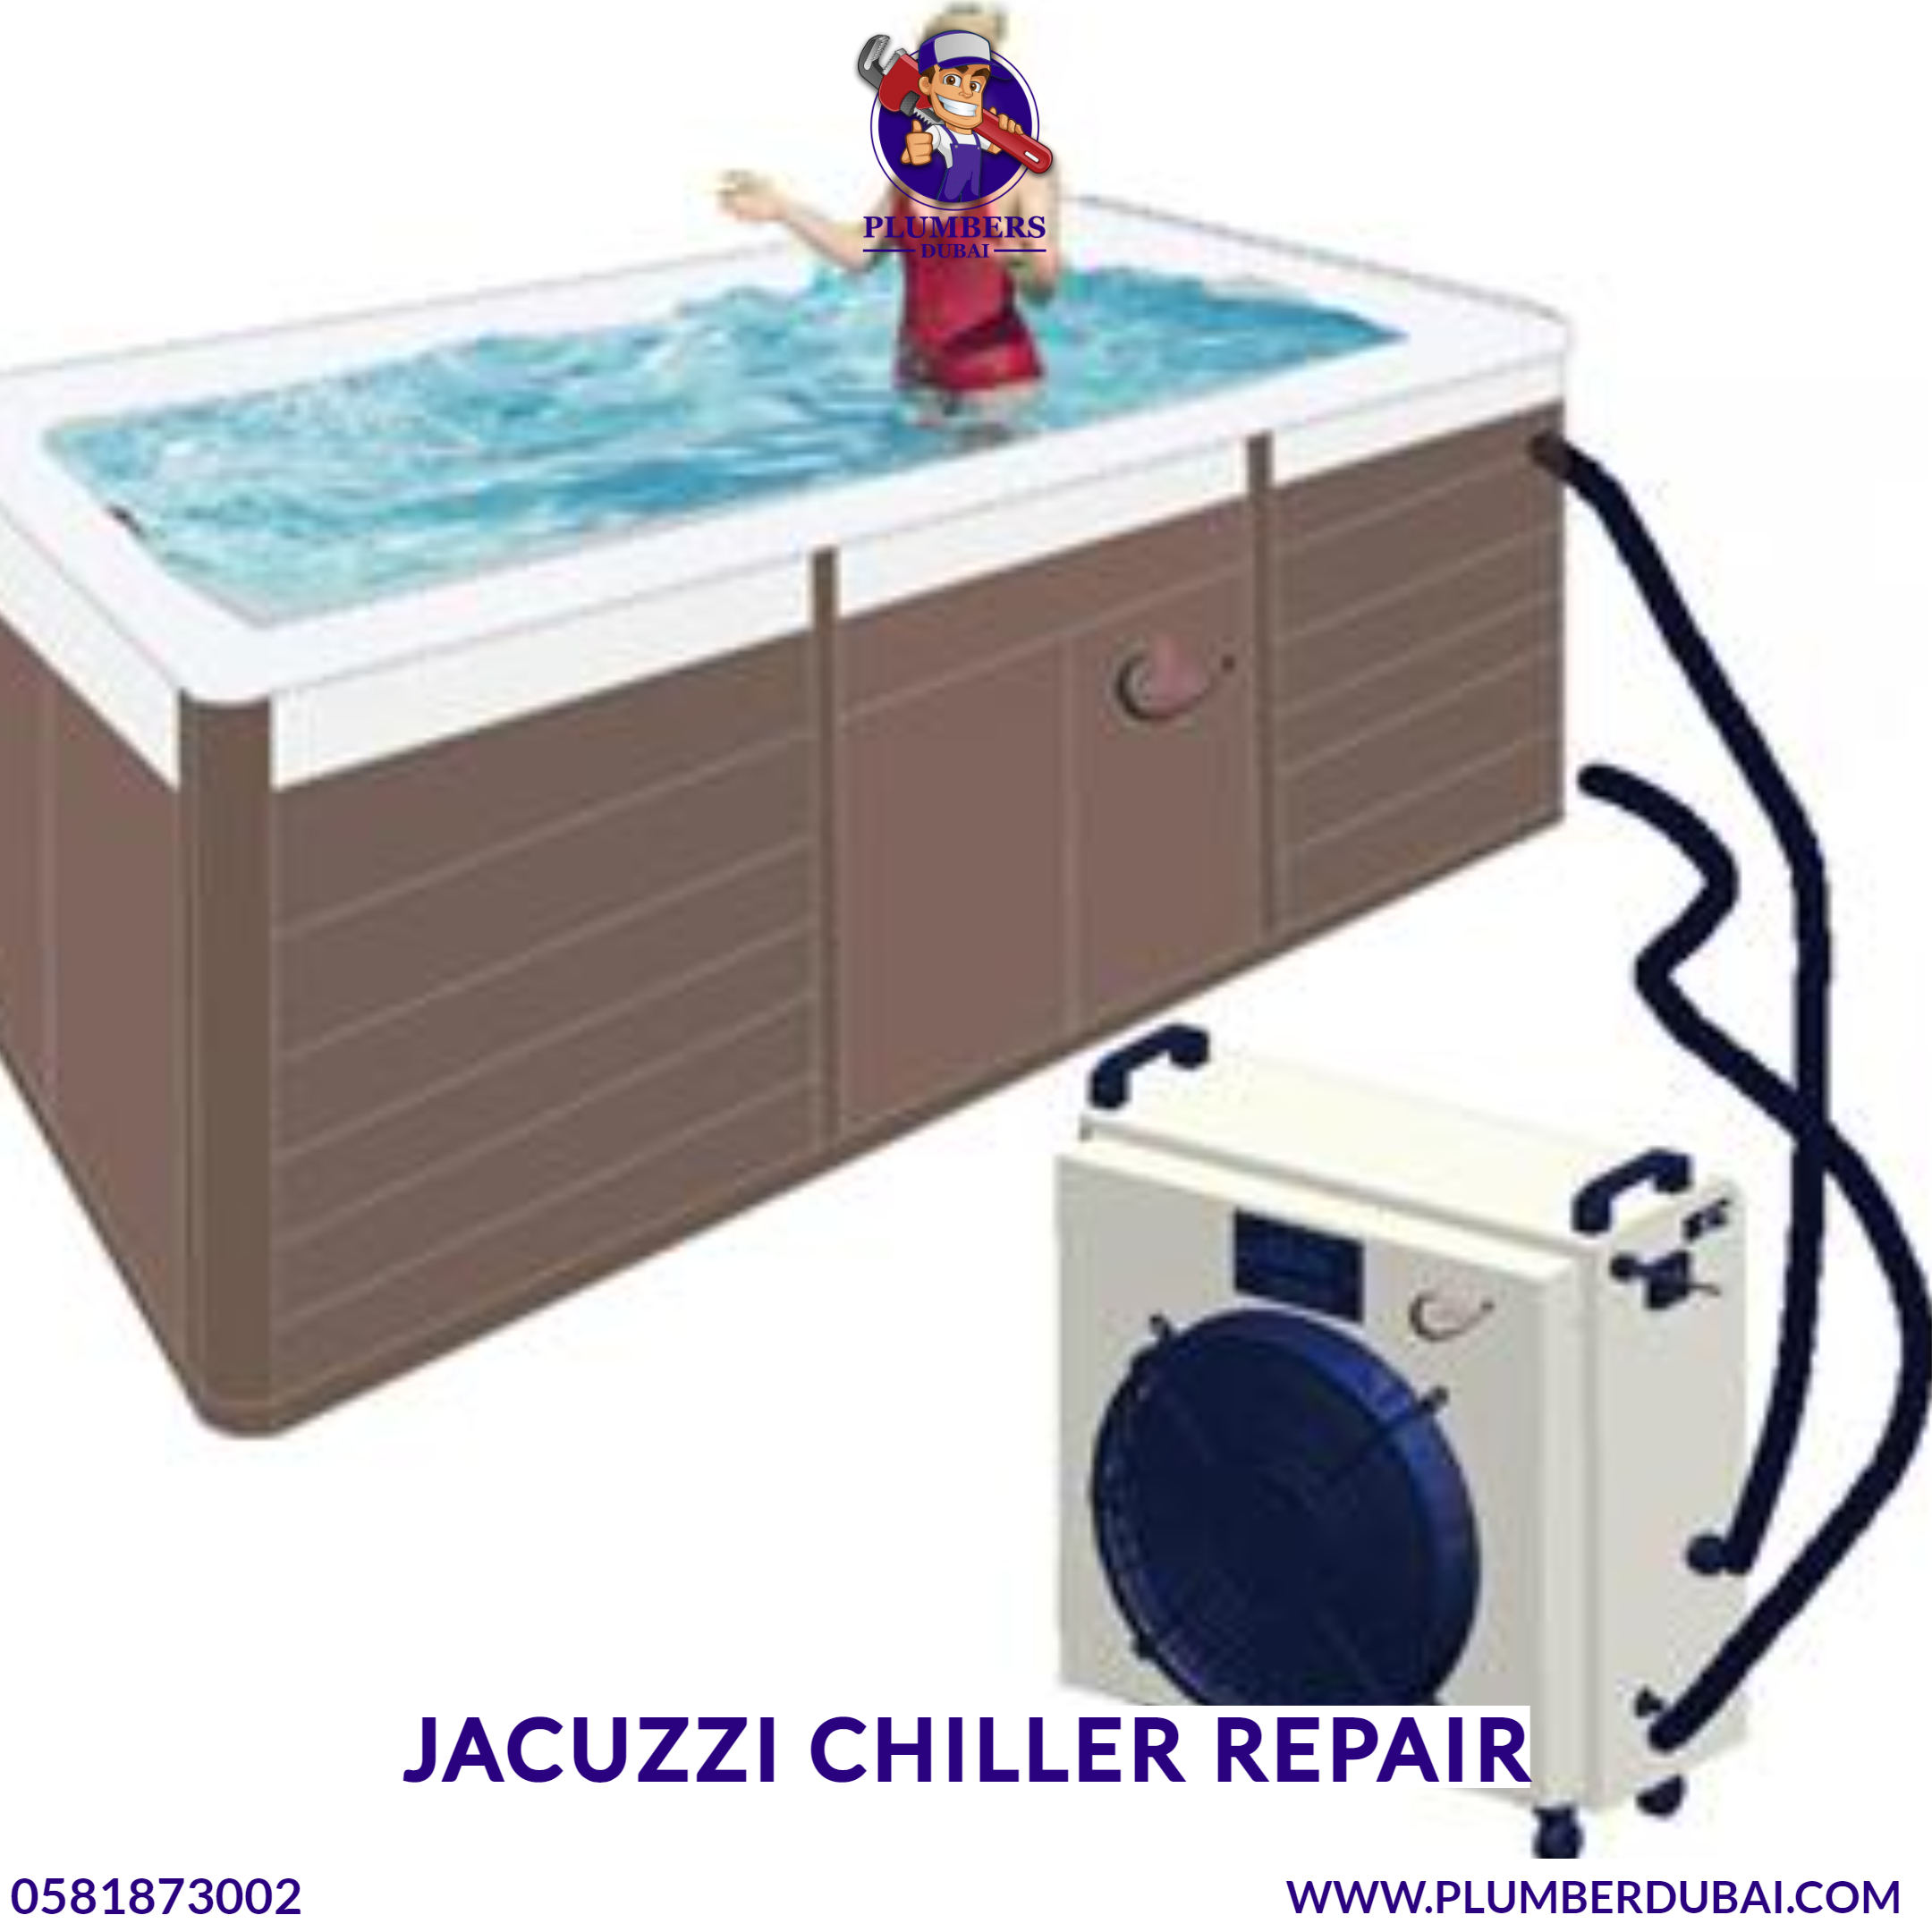 Jacuzzi chiller repair